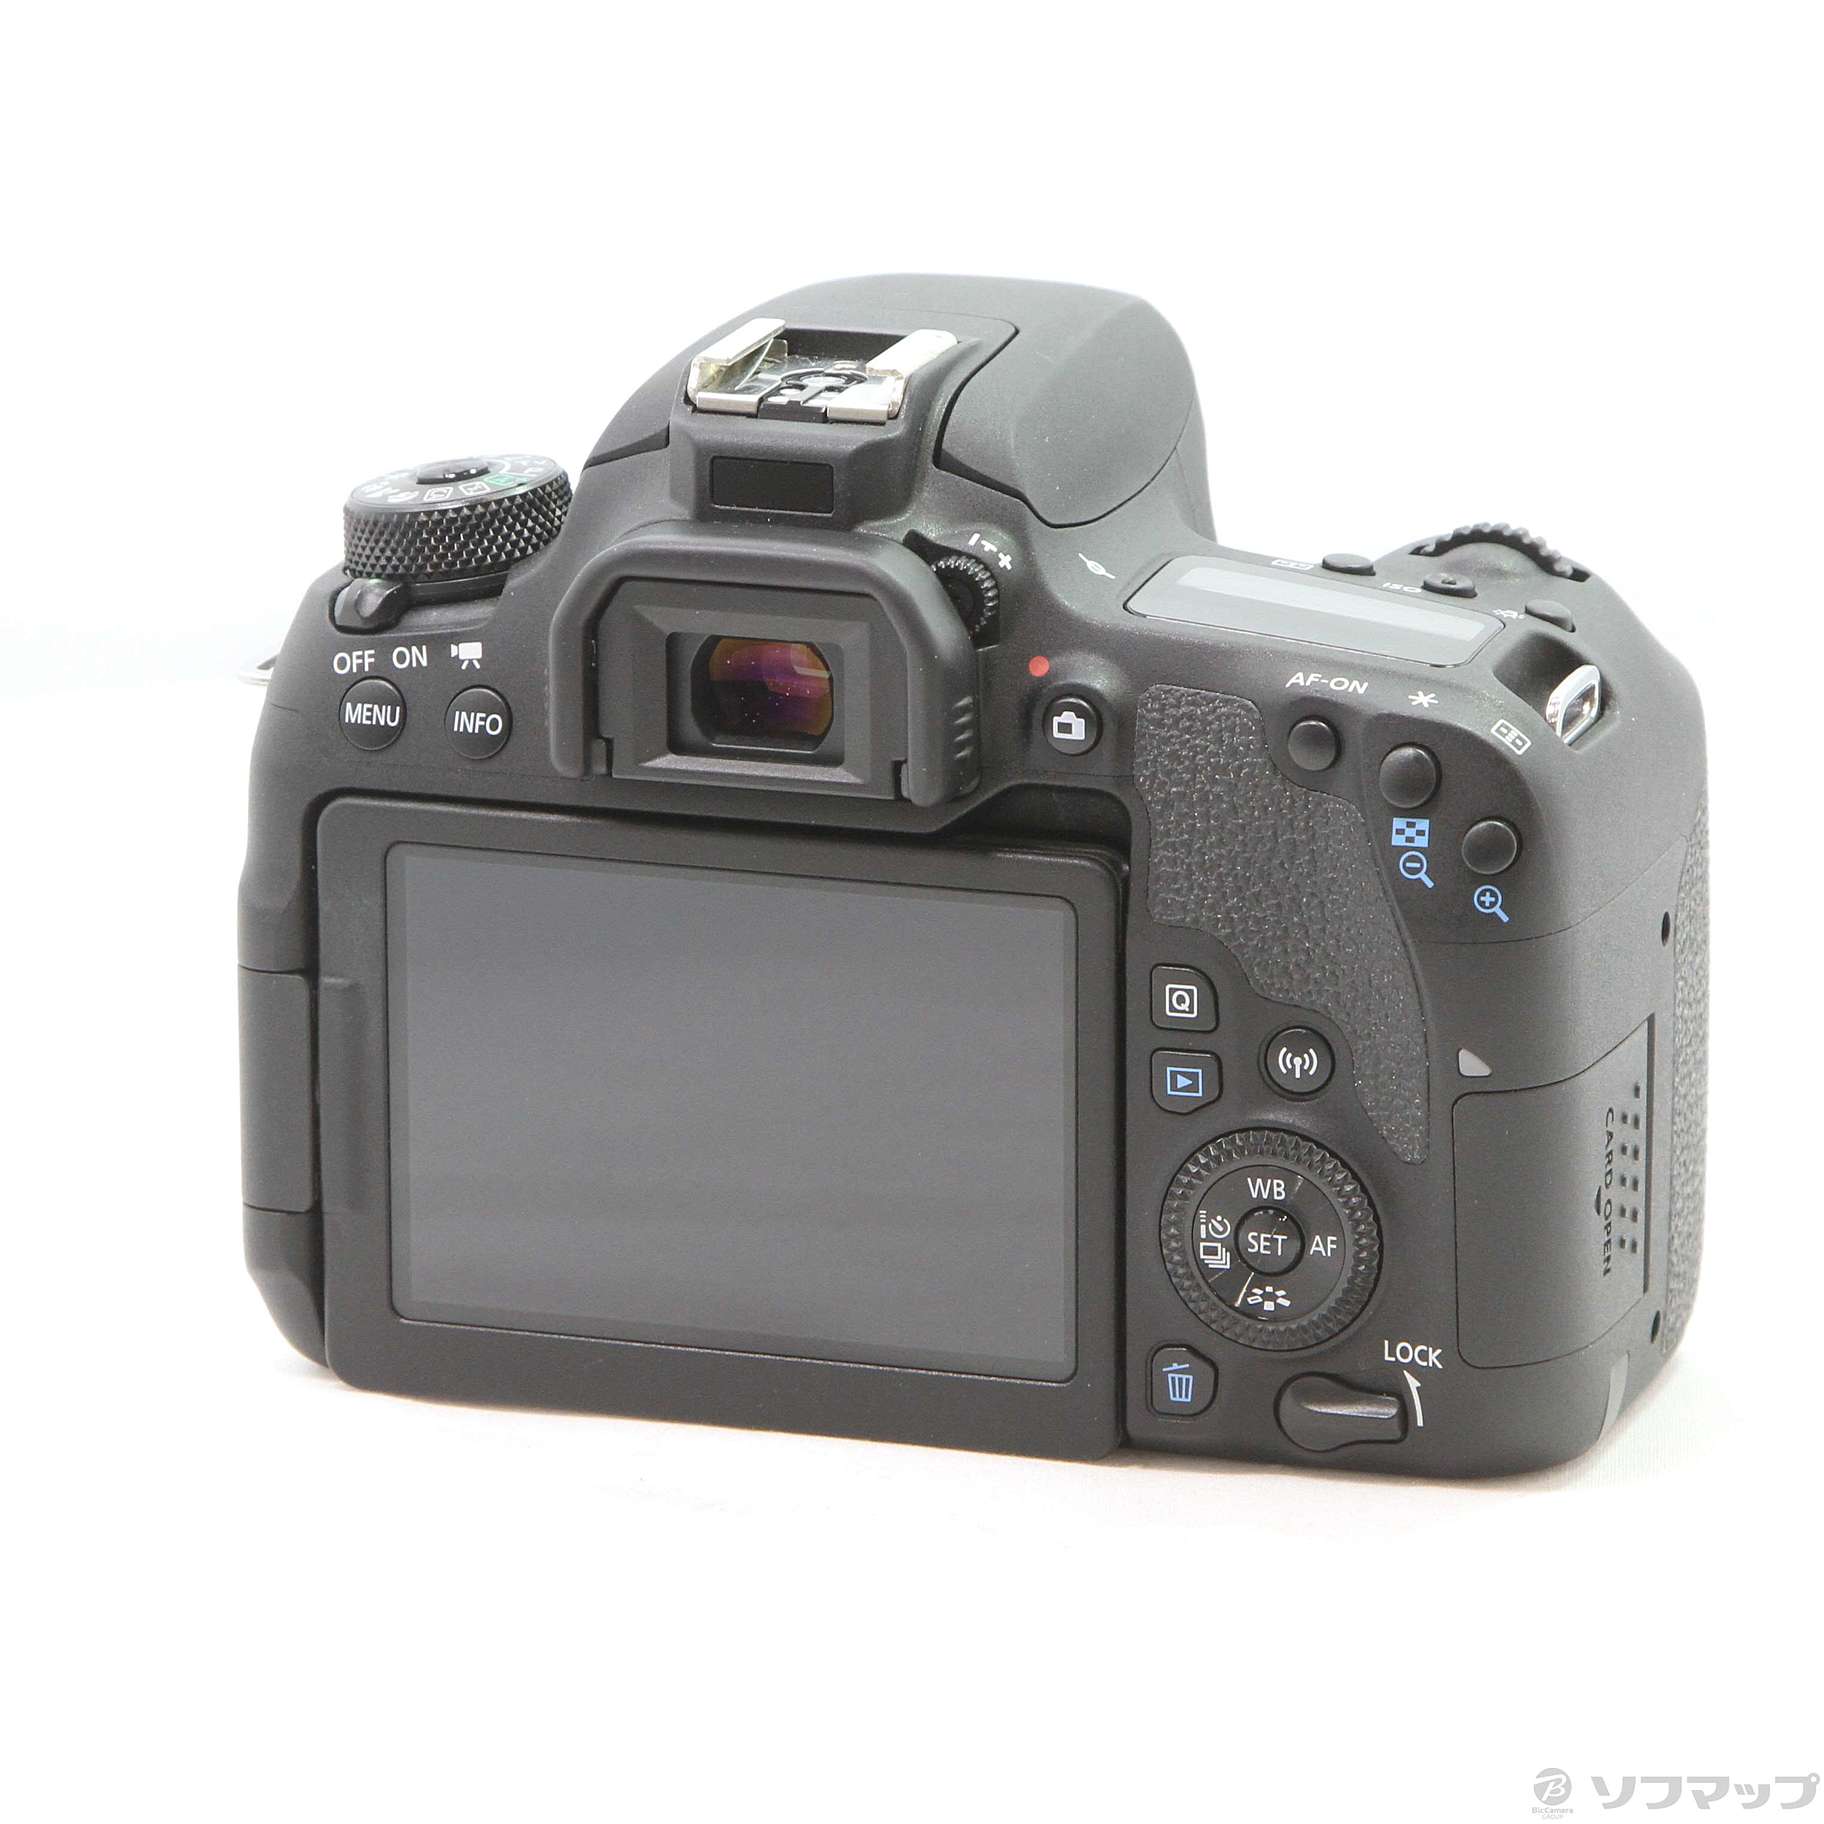 美品 Canon EOS 9000D ボディ